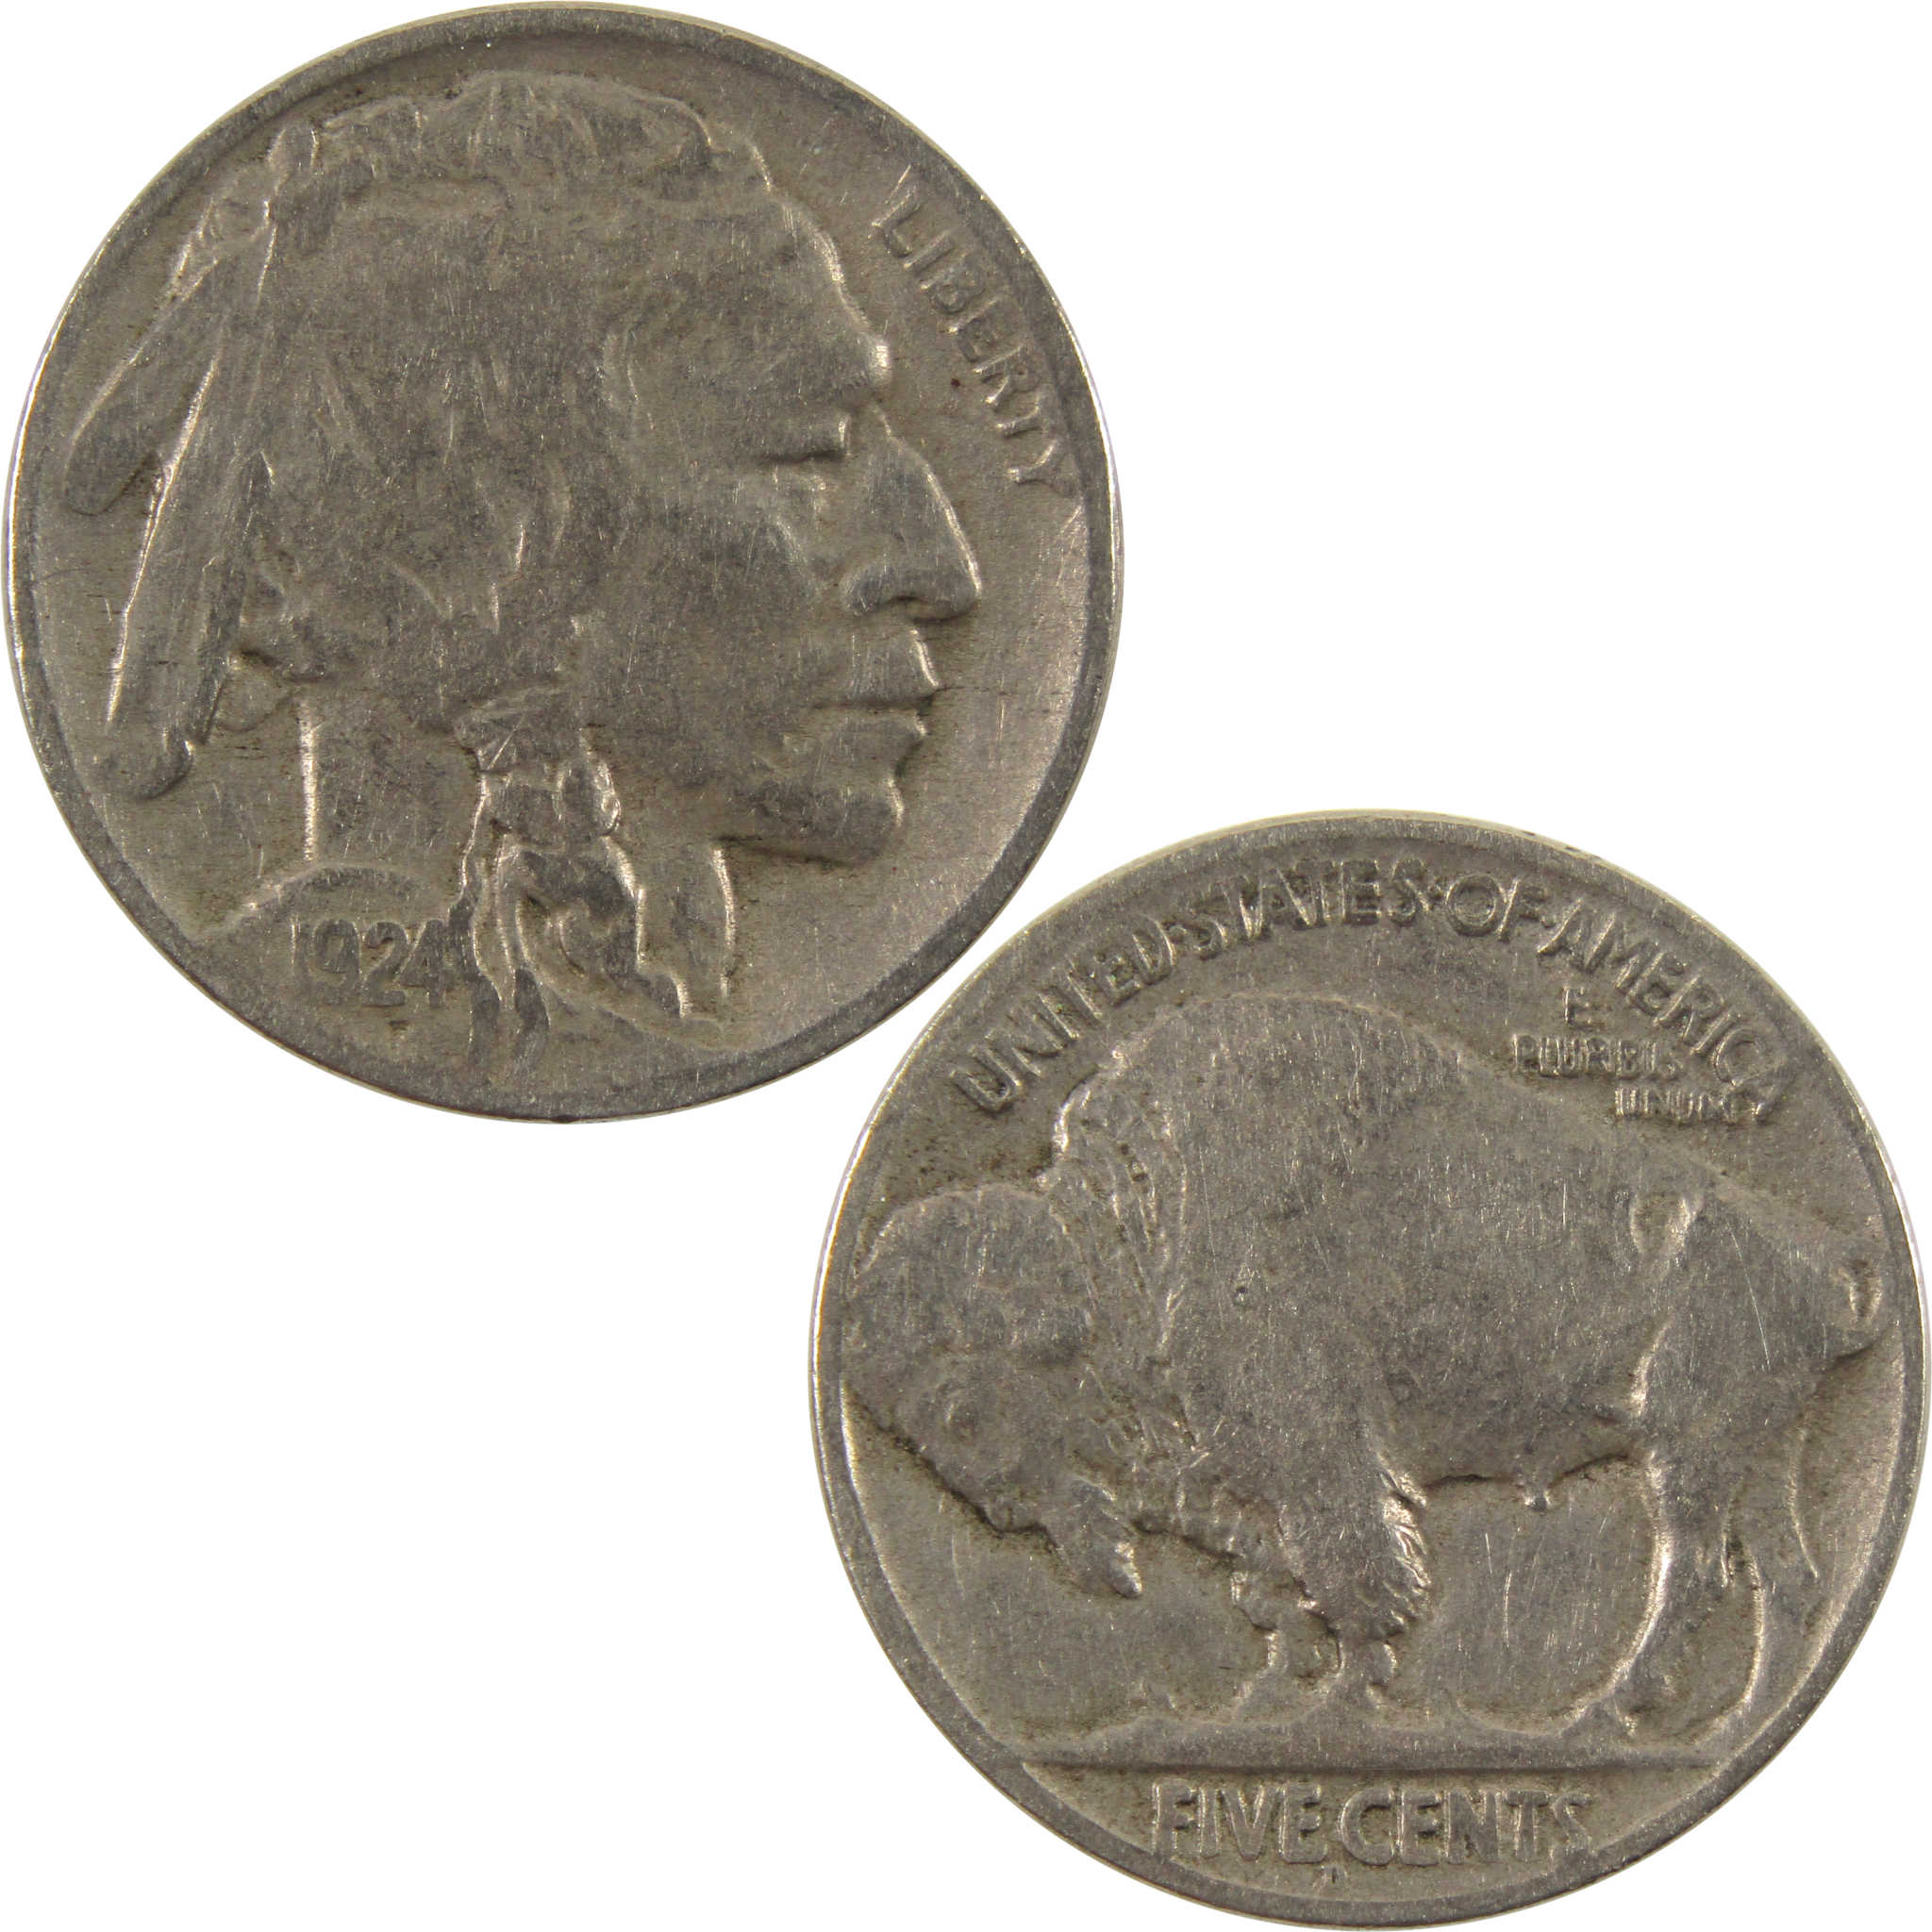 1924 D Indian Head Buffalo Nickel F Fine 5c Coin SKU:I9449